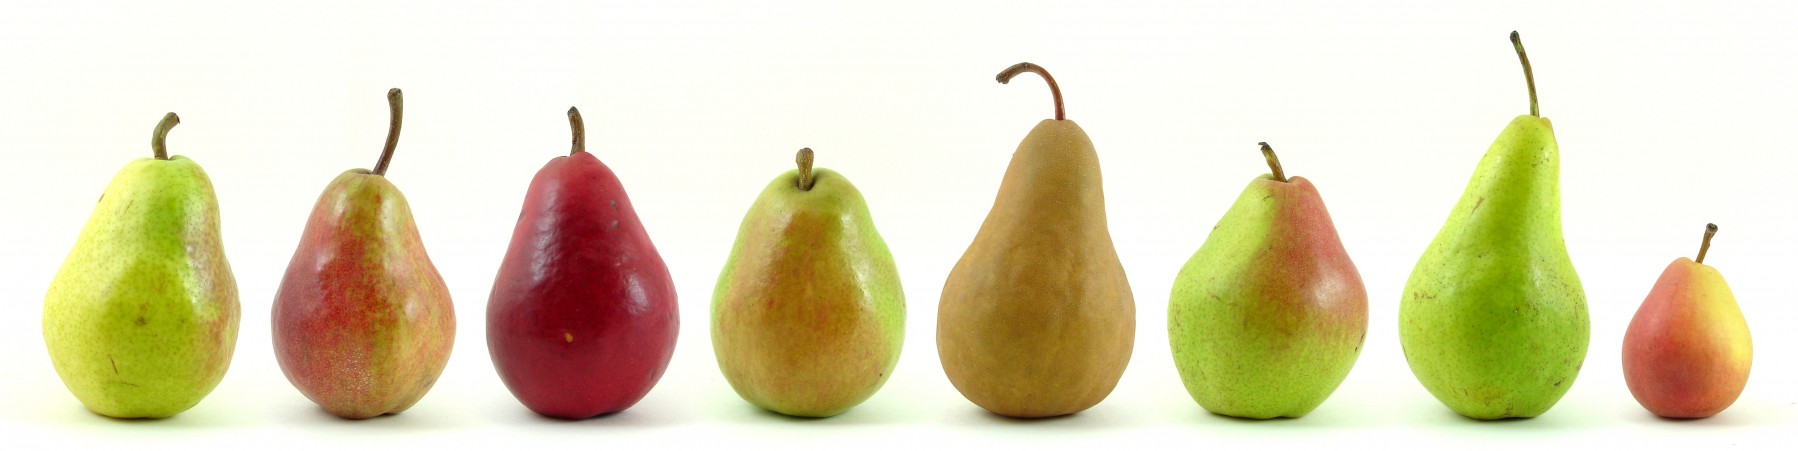 Eight_varieties_of_pears